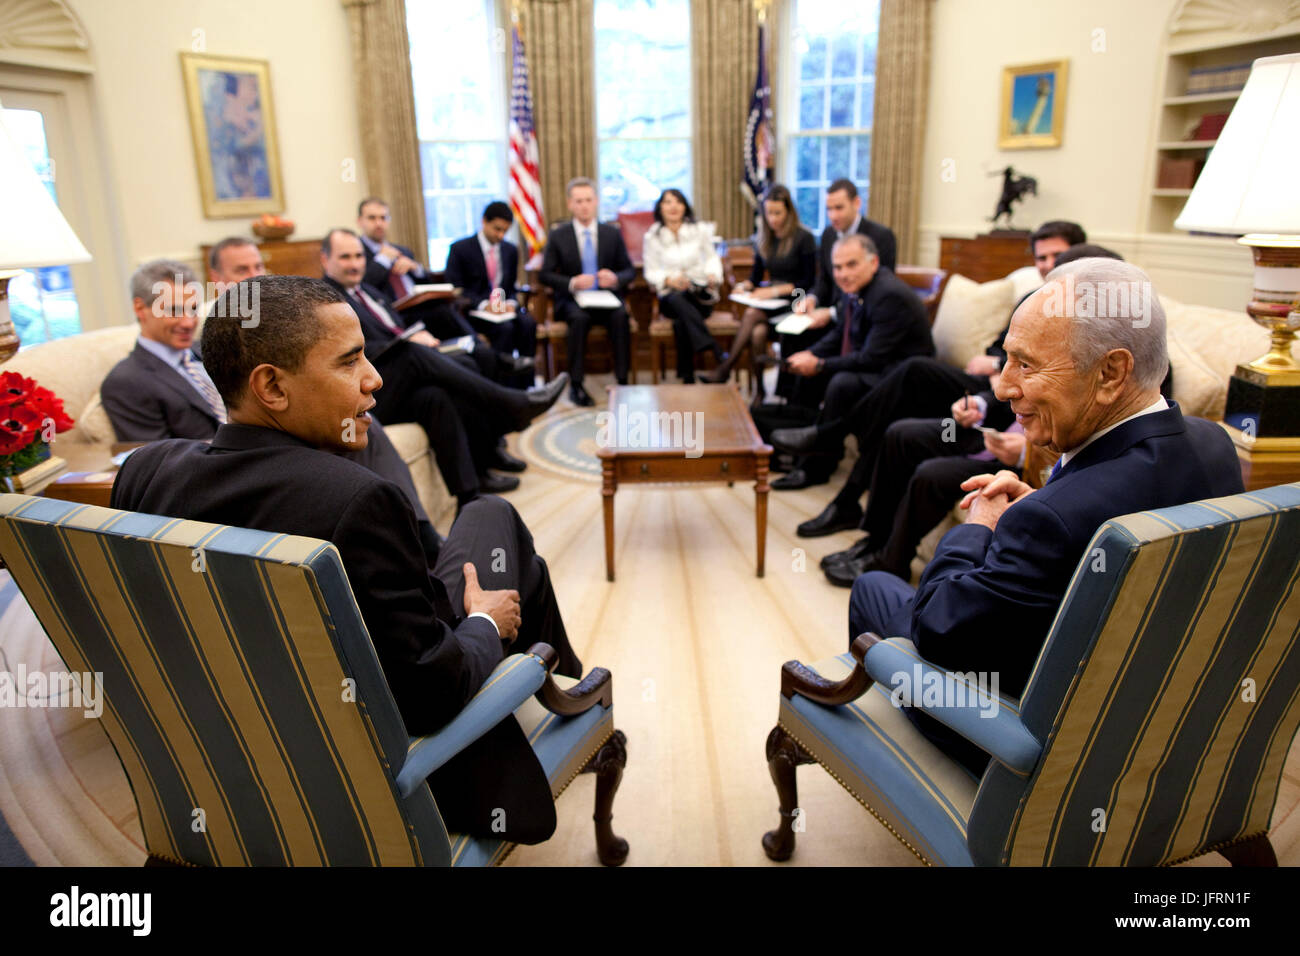 Le président Barack Obama rencontre avec le président israélien Shimon Peres dans le bureau ovale Le mardi, 5 mai 2009. Photo Officiel de la Maison Blanche par Pete Souza Banque D'Images